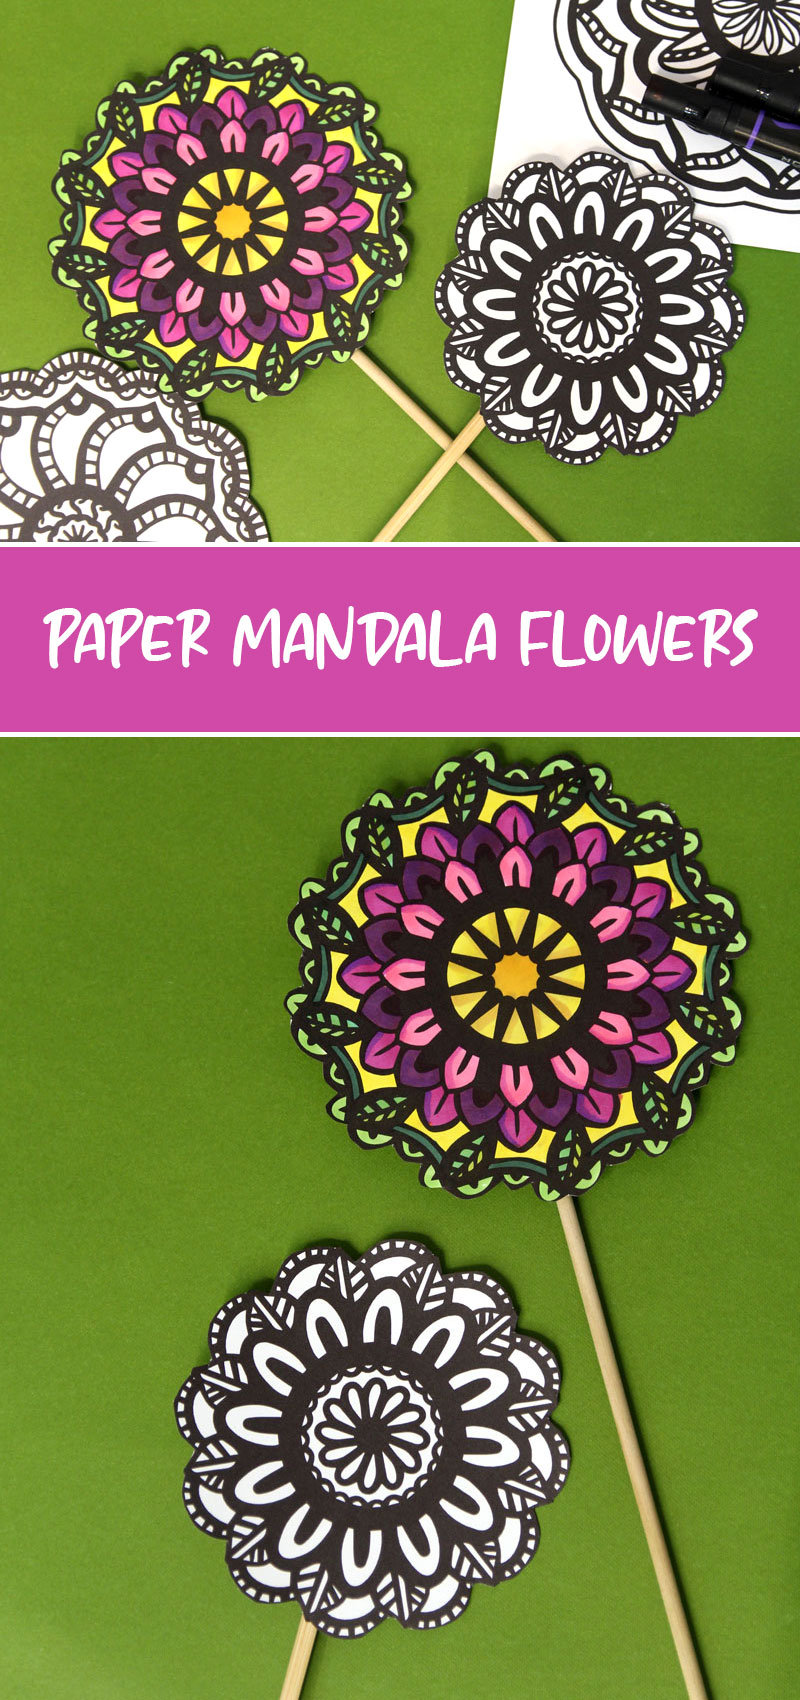 flower mandalas hero collage